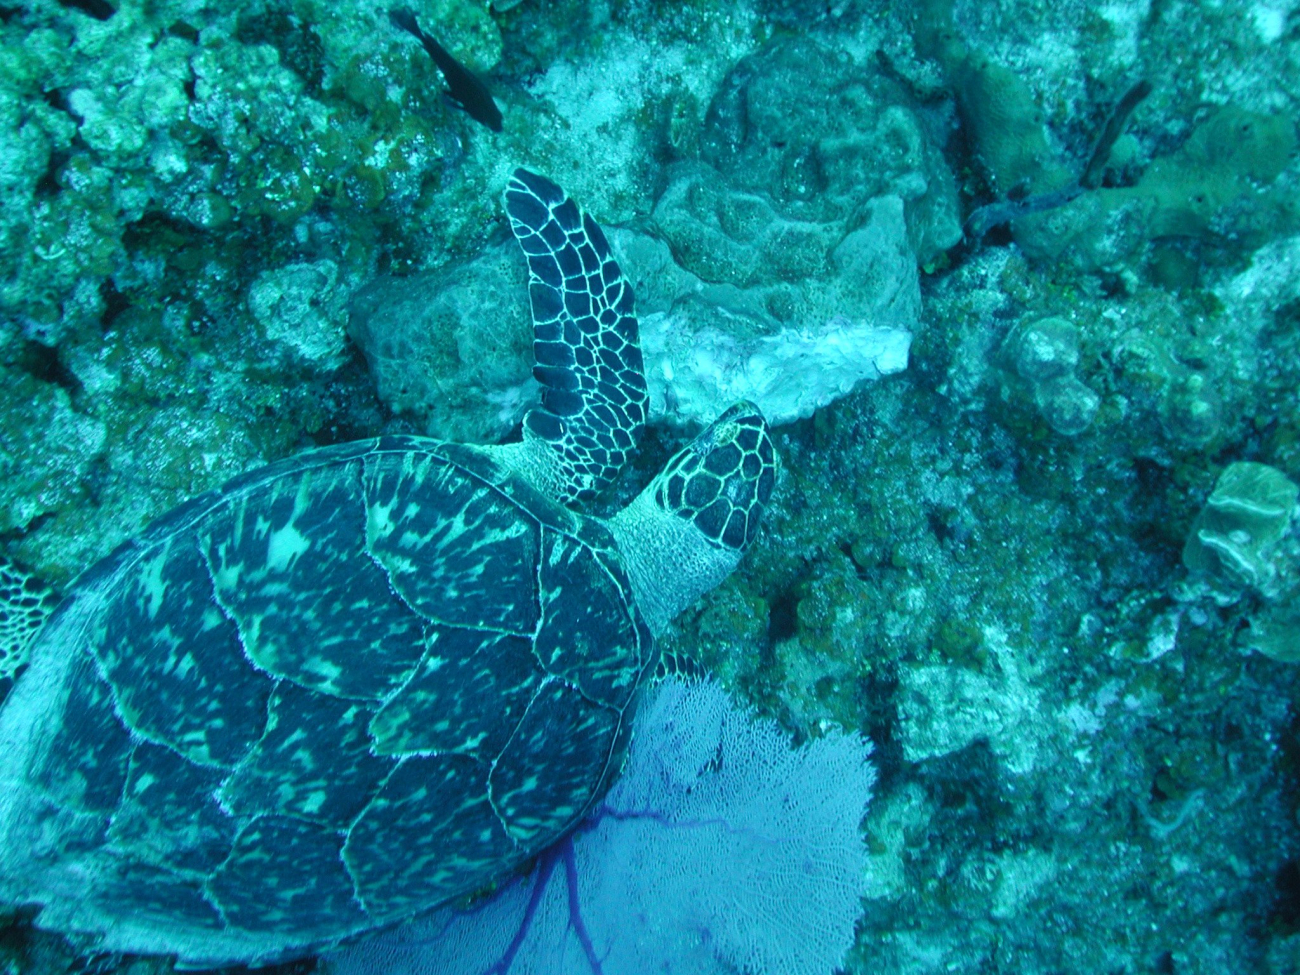 A Hawksbill turtle feeding on a sponge